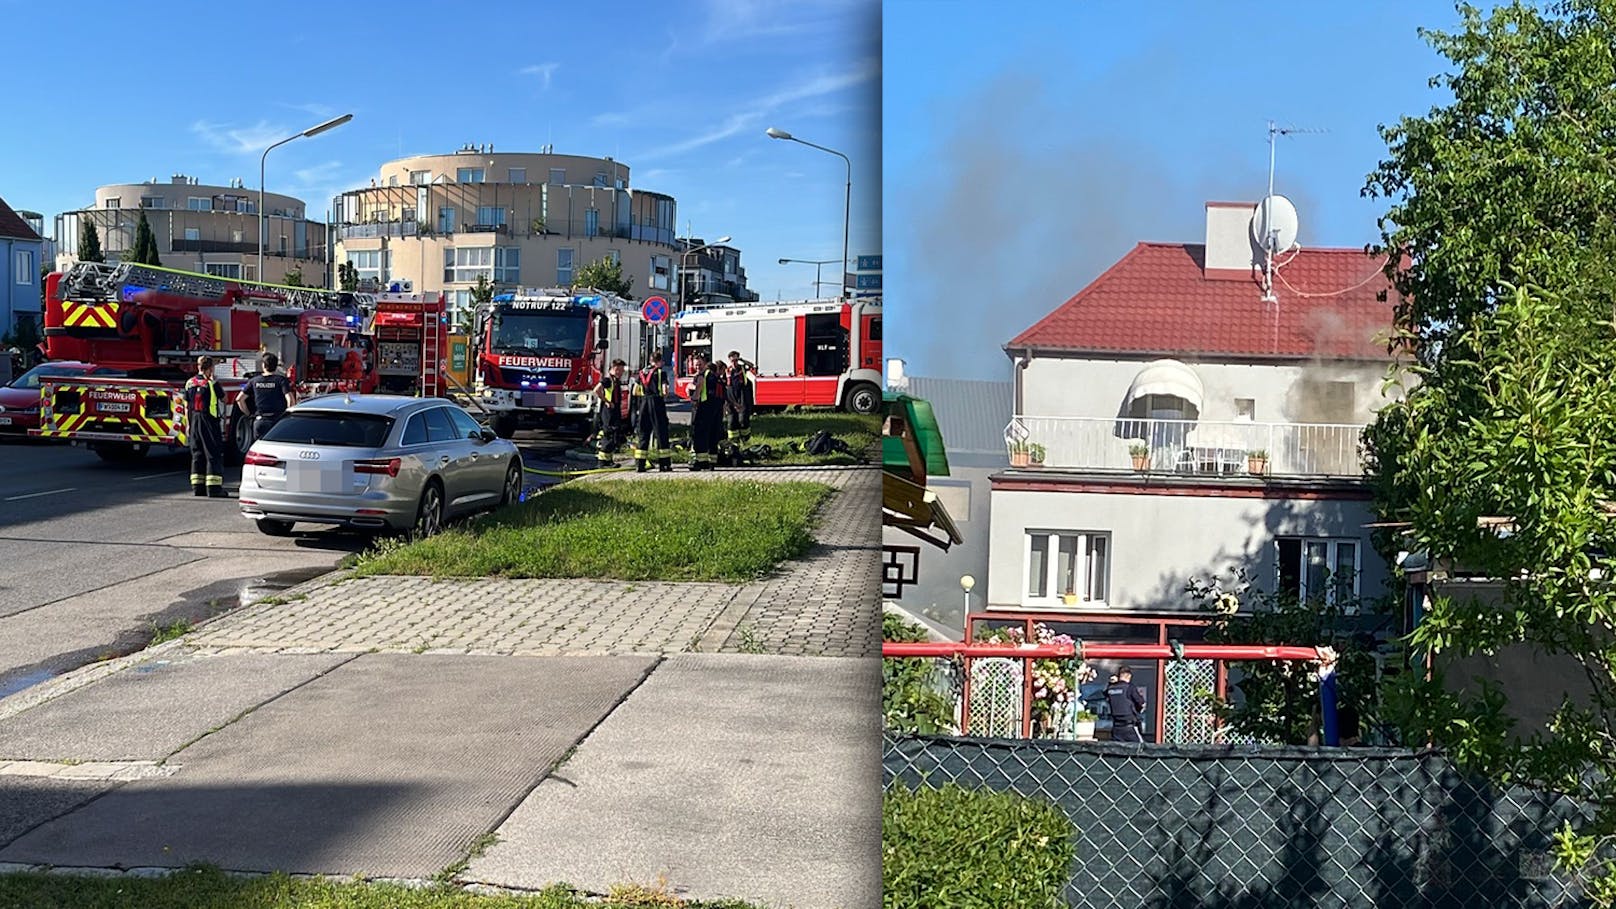 Brand in Wien – Bewohner befanden sich noch im Haus